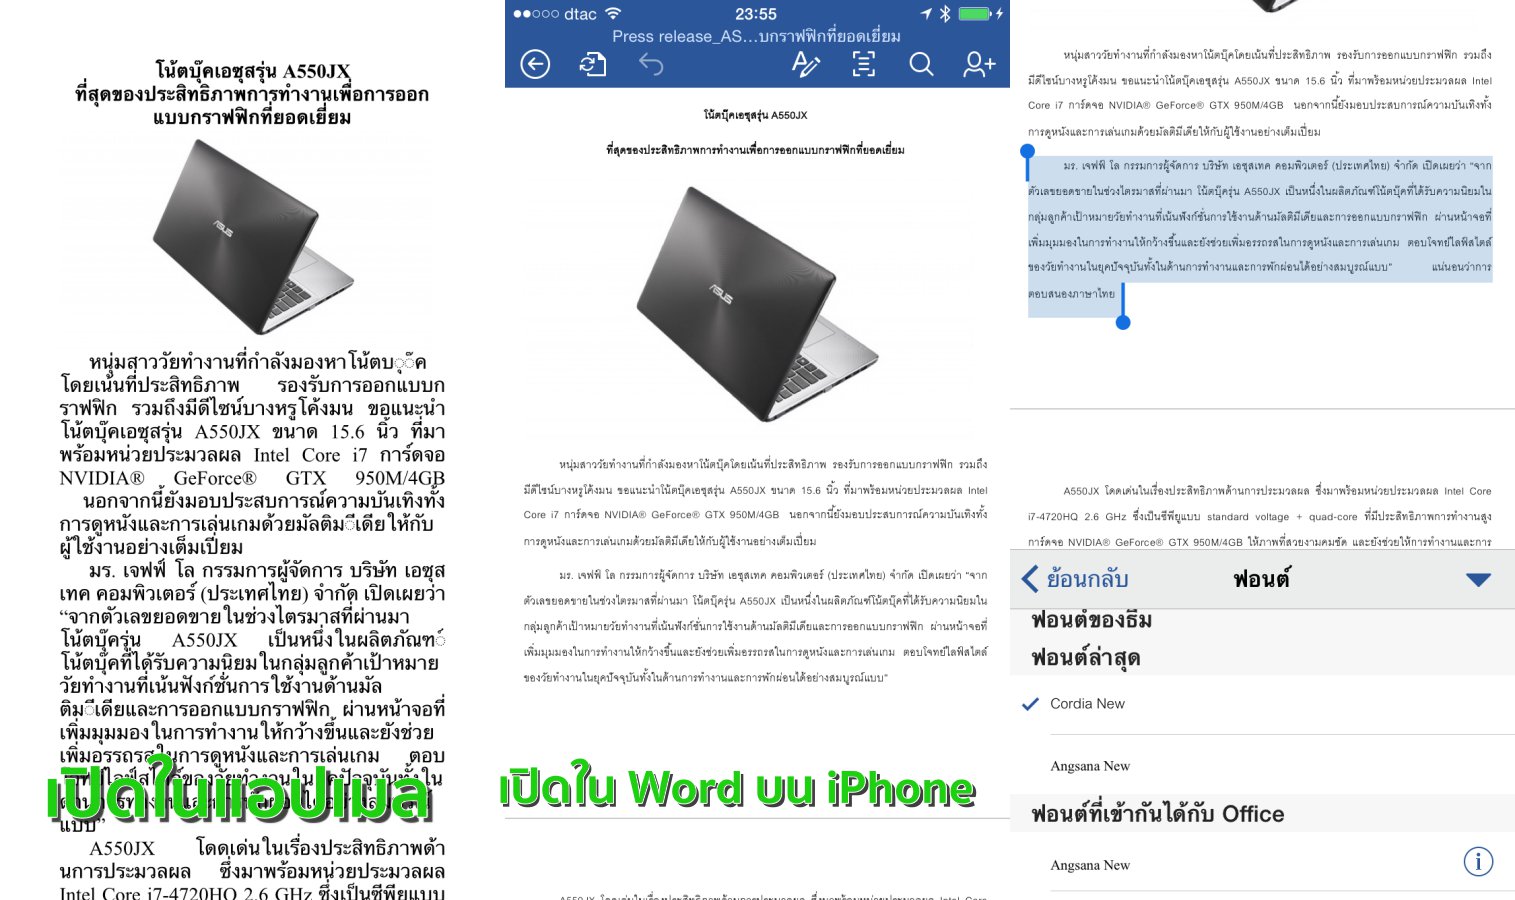 เปรียบเทียบการแสดงผลในแอป Mail และ Word พร้อมหน้าจอเลือกฟอนต์ของ Word for iOS ที่มีฟอนต์ไทยด้วย